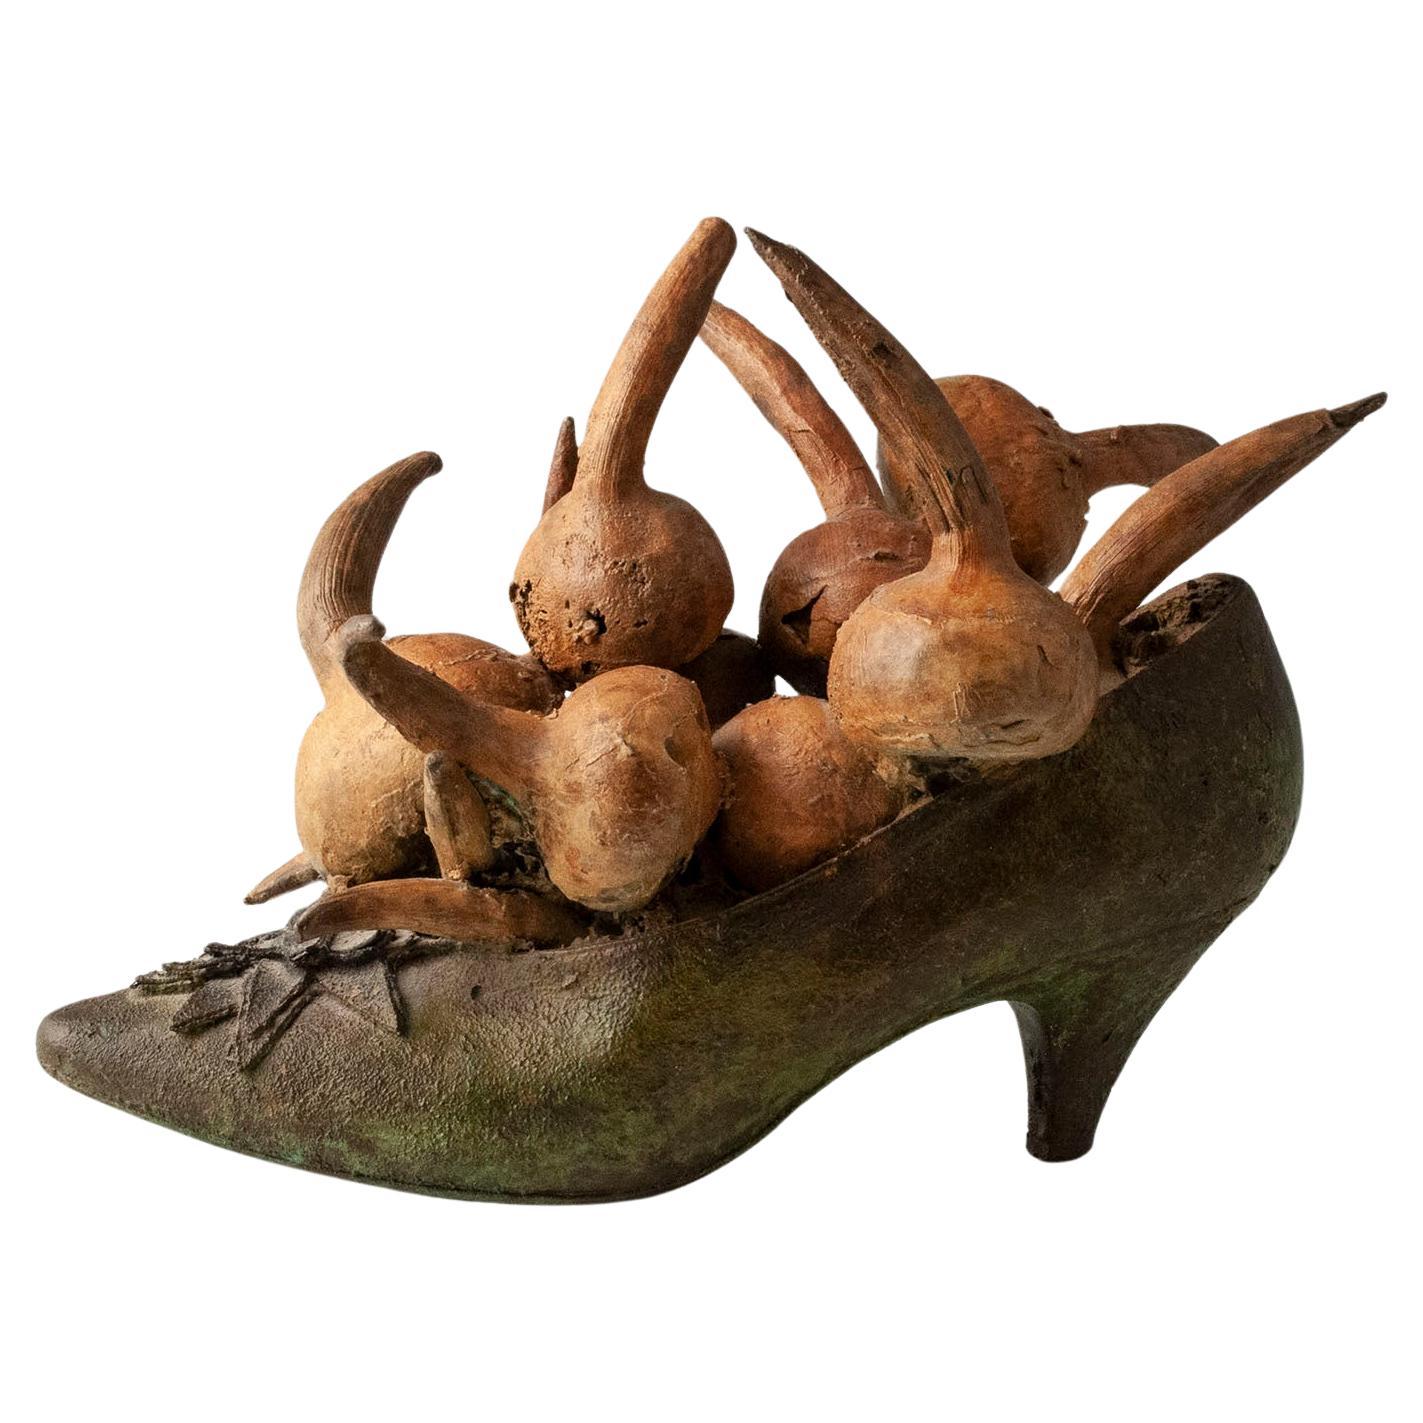 Steve Tobin Cast Bronze Shoe Sculpture with Onions, 1980s For Sale